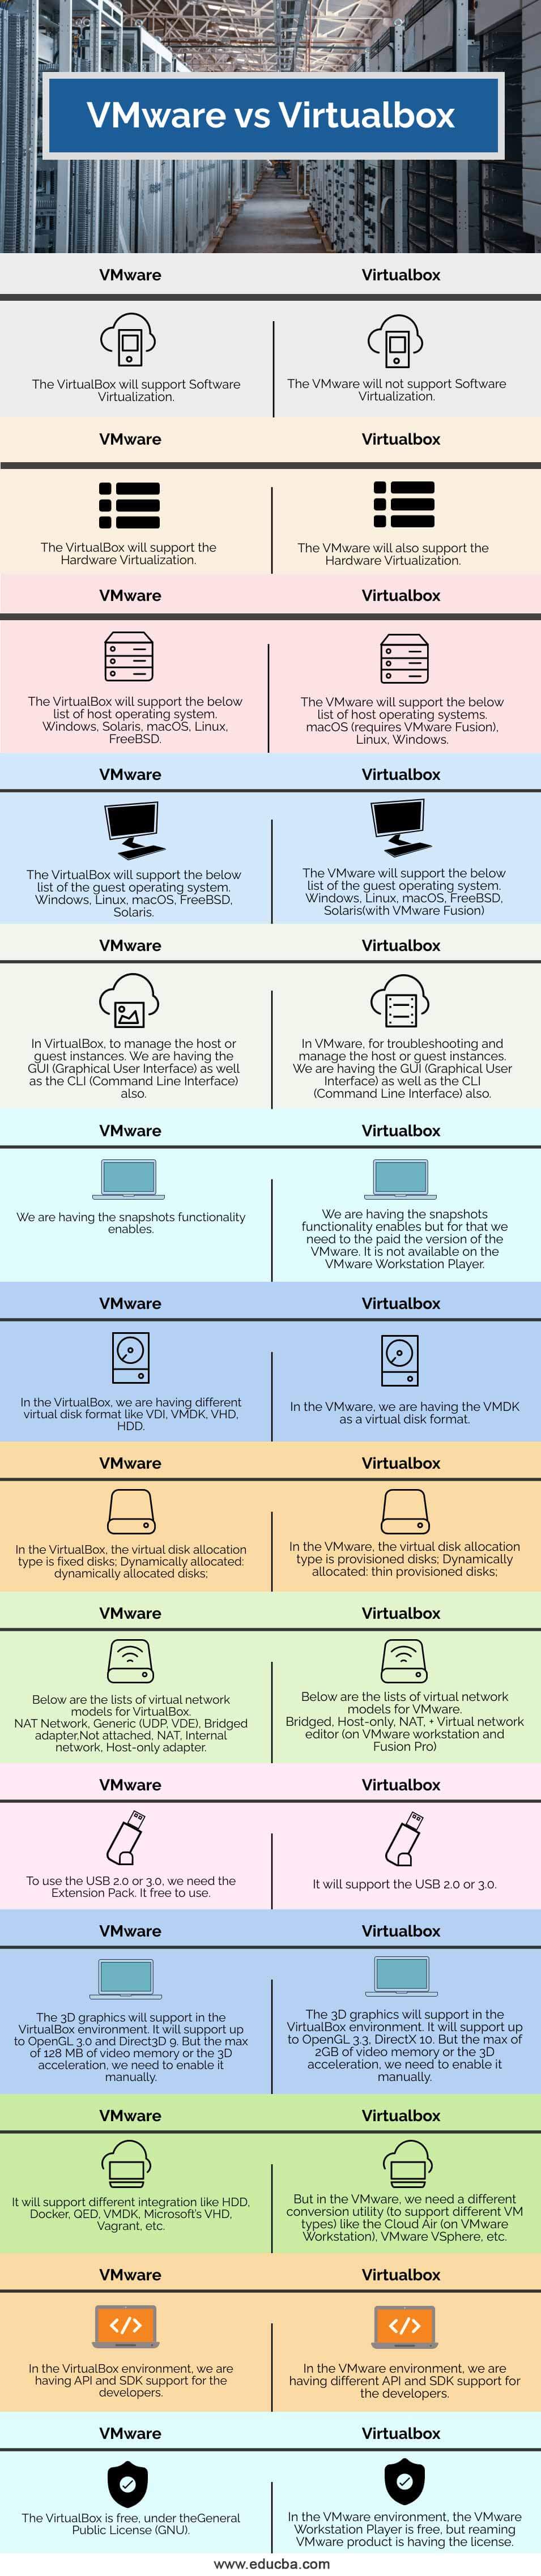 virtualbox vmware image